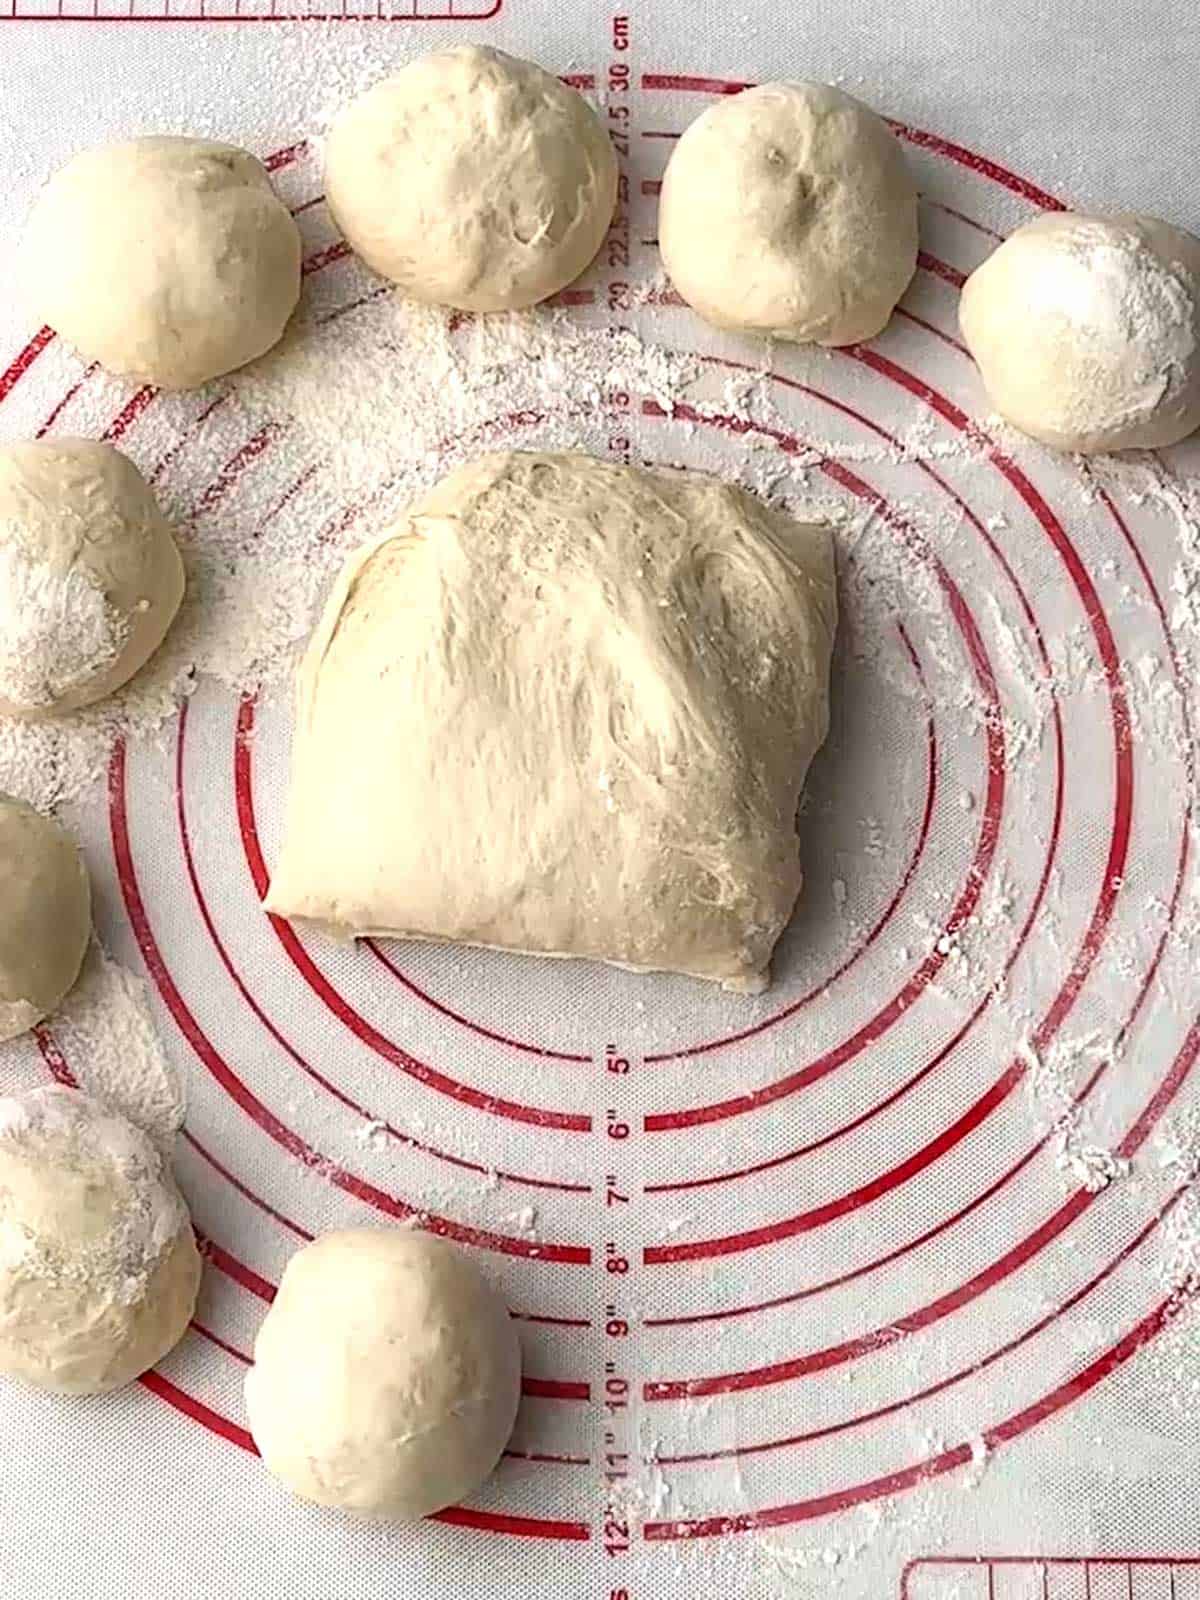 Forming dough into balls.